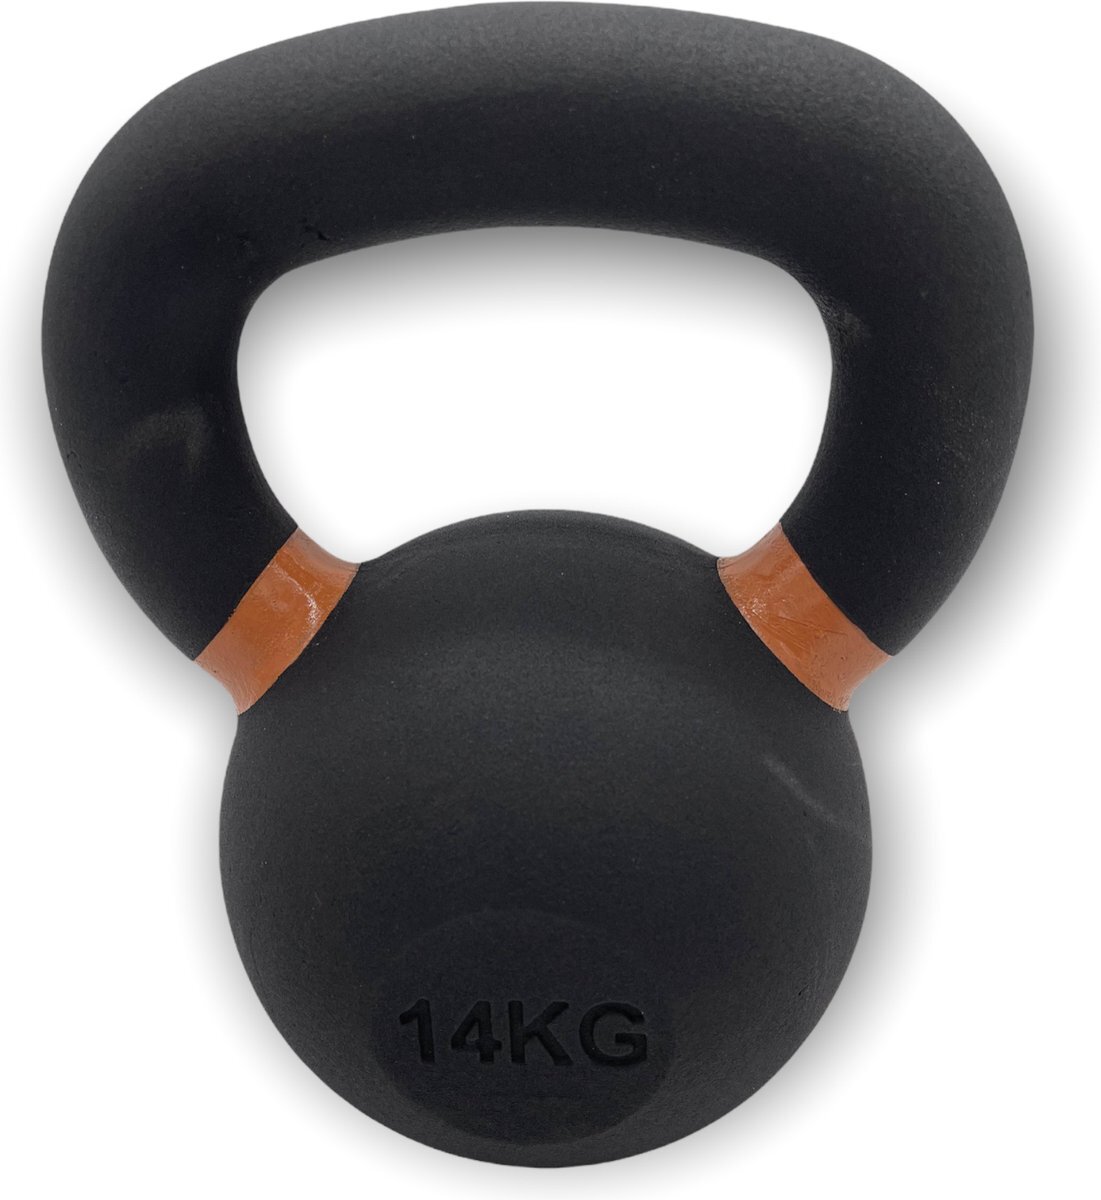 Padisport Kettlebell 14 kg - kettlebell - 14 kg - cast iron - gietijzer - fitness - gewicht